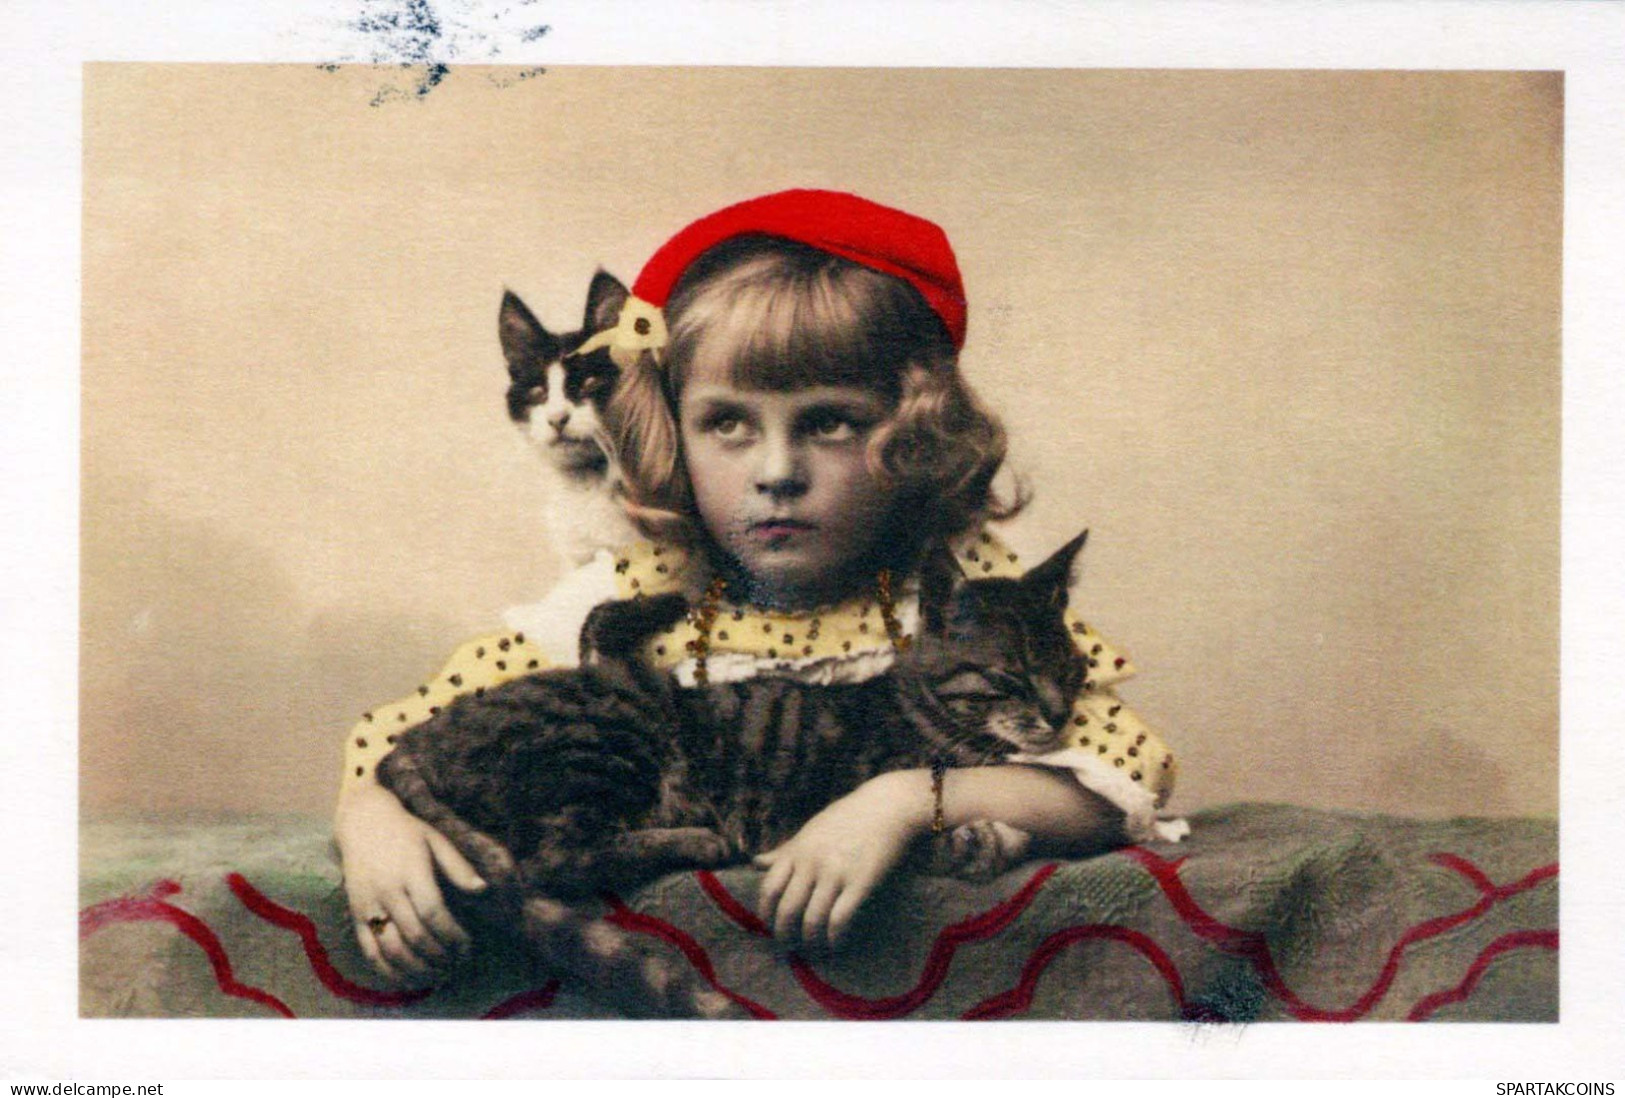 ENFANTS Portrait Vintage Carte Postale CPSMPF #PKG857.A - Portraits